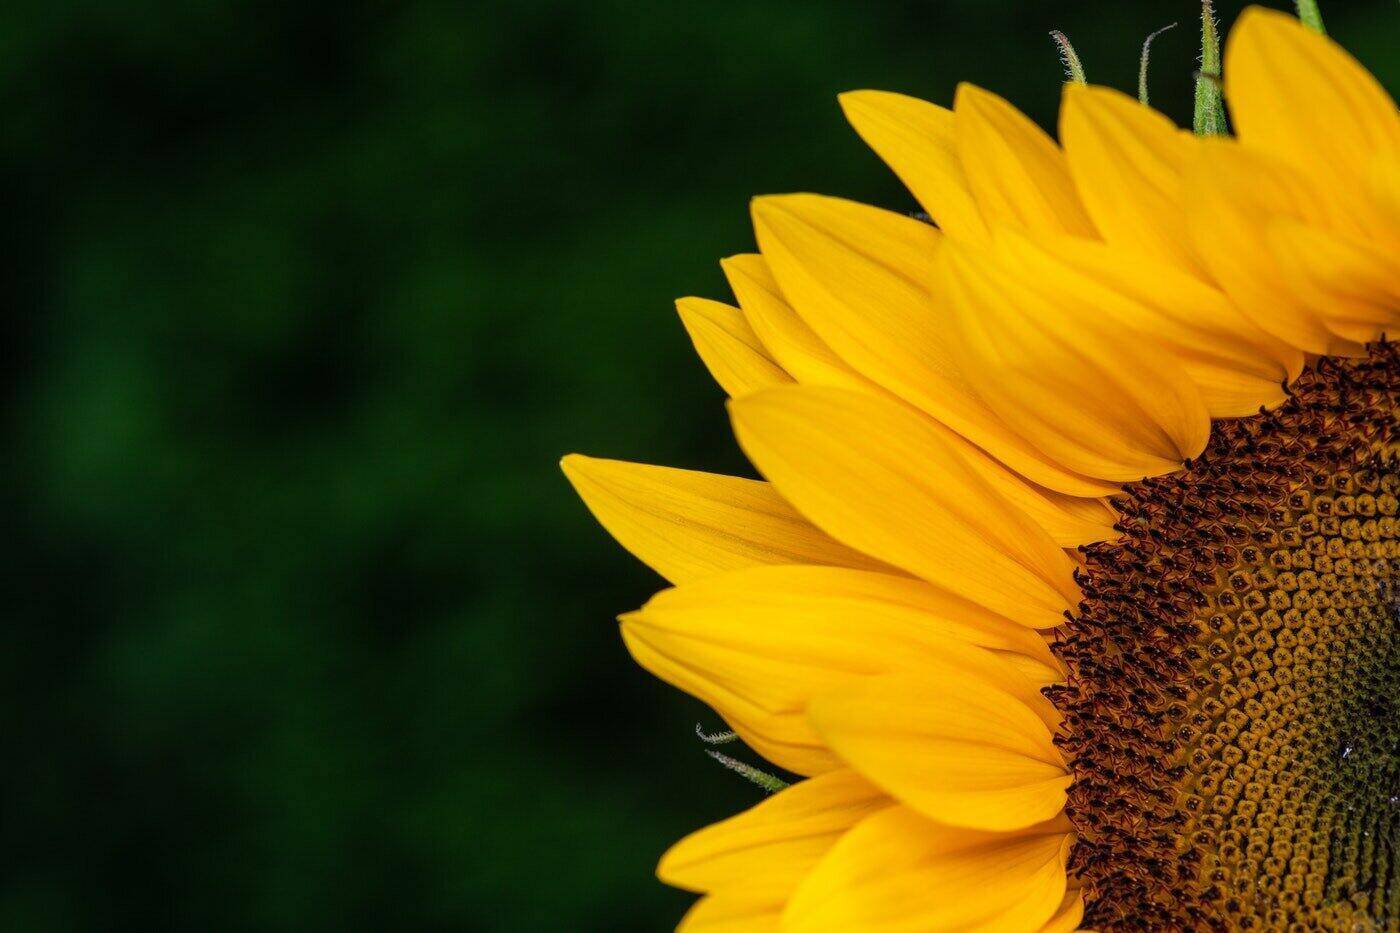 Sonnenblume in der Ecke des Bildes - Sonnenblumen Bedeutung und Symbolik